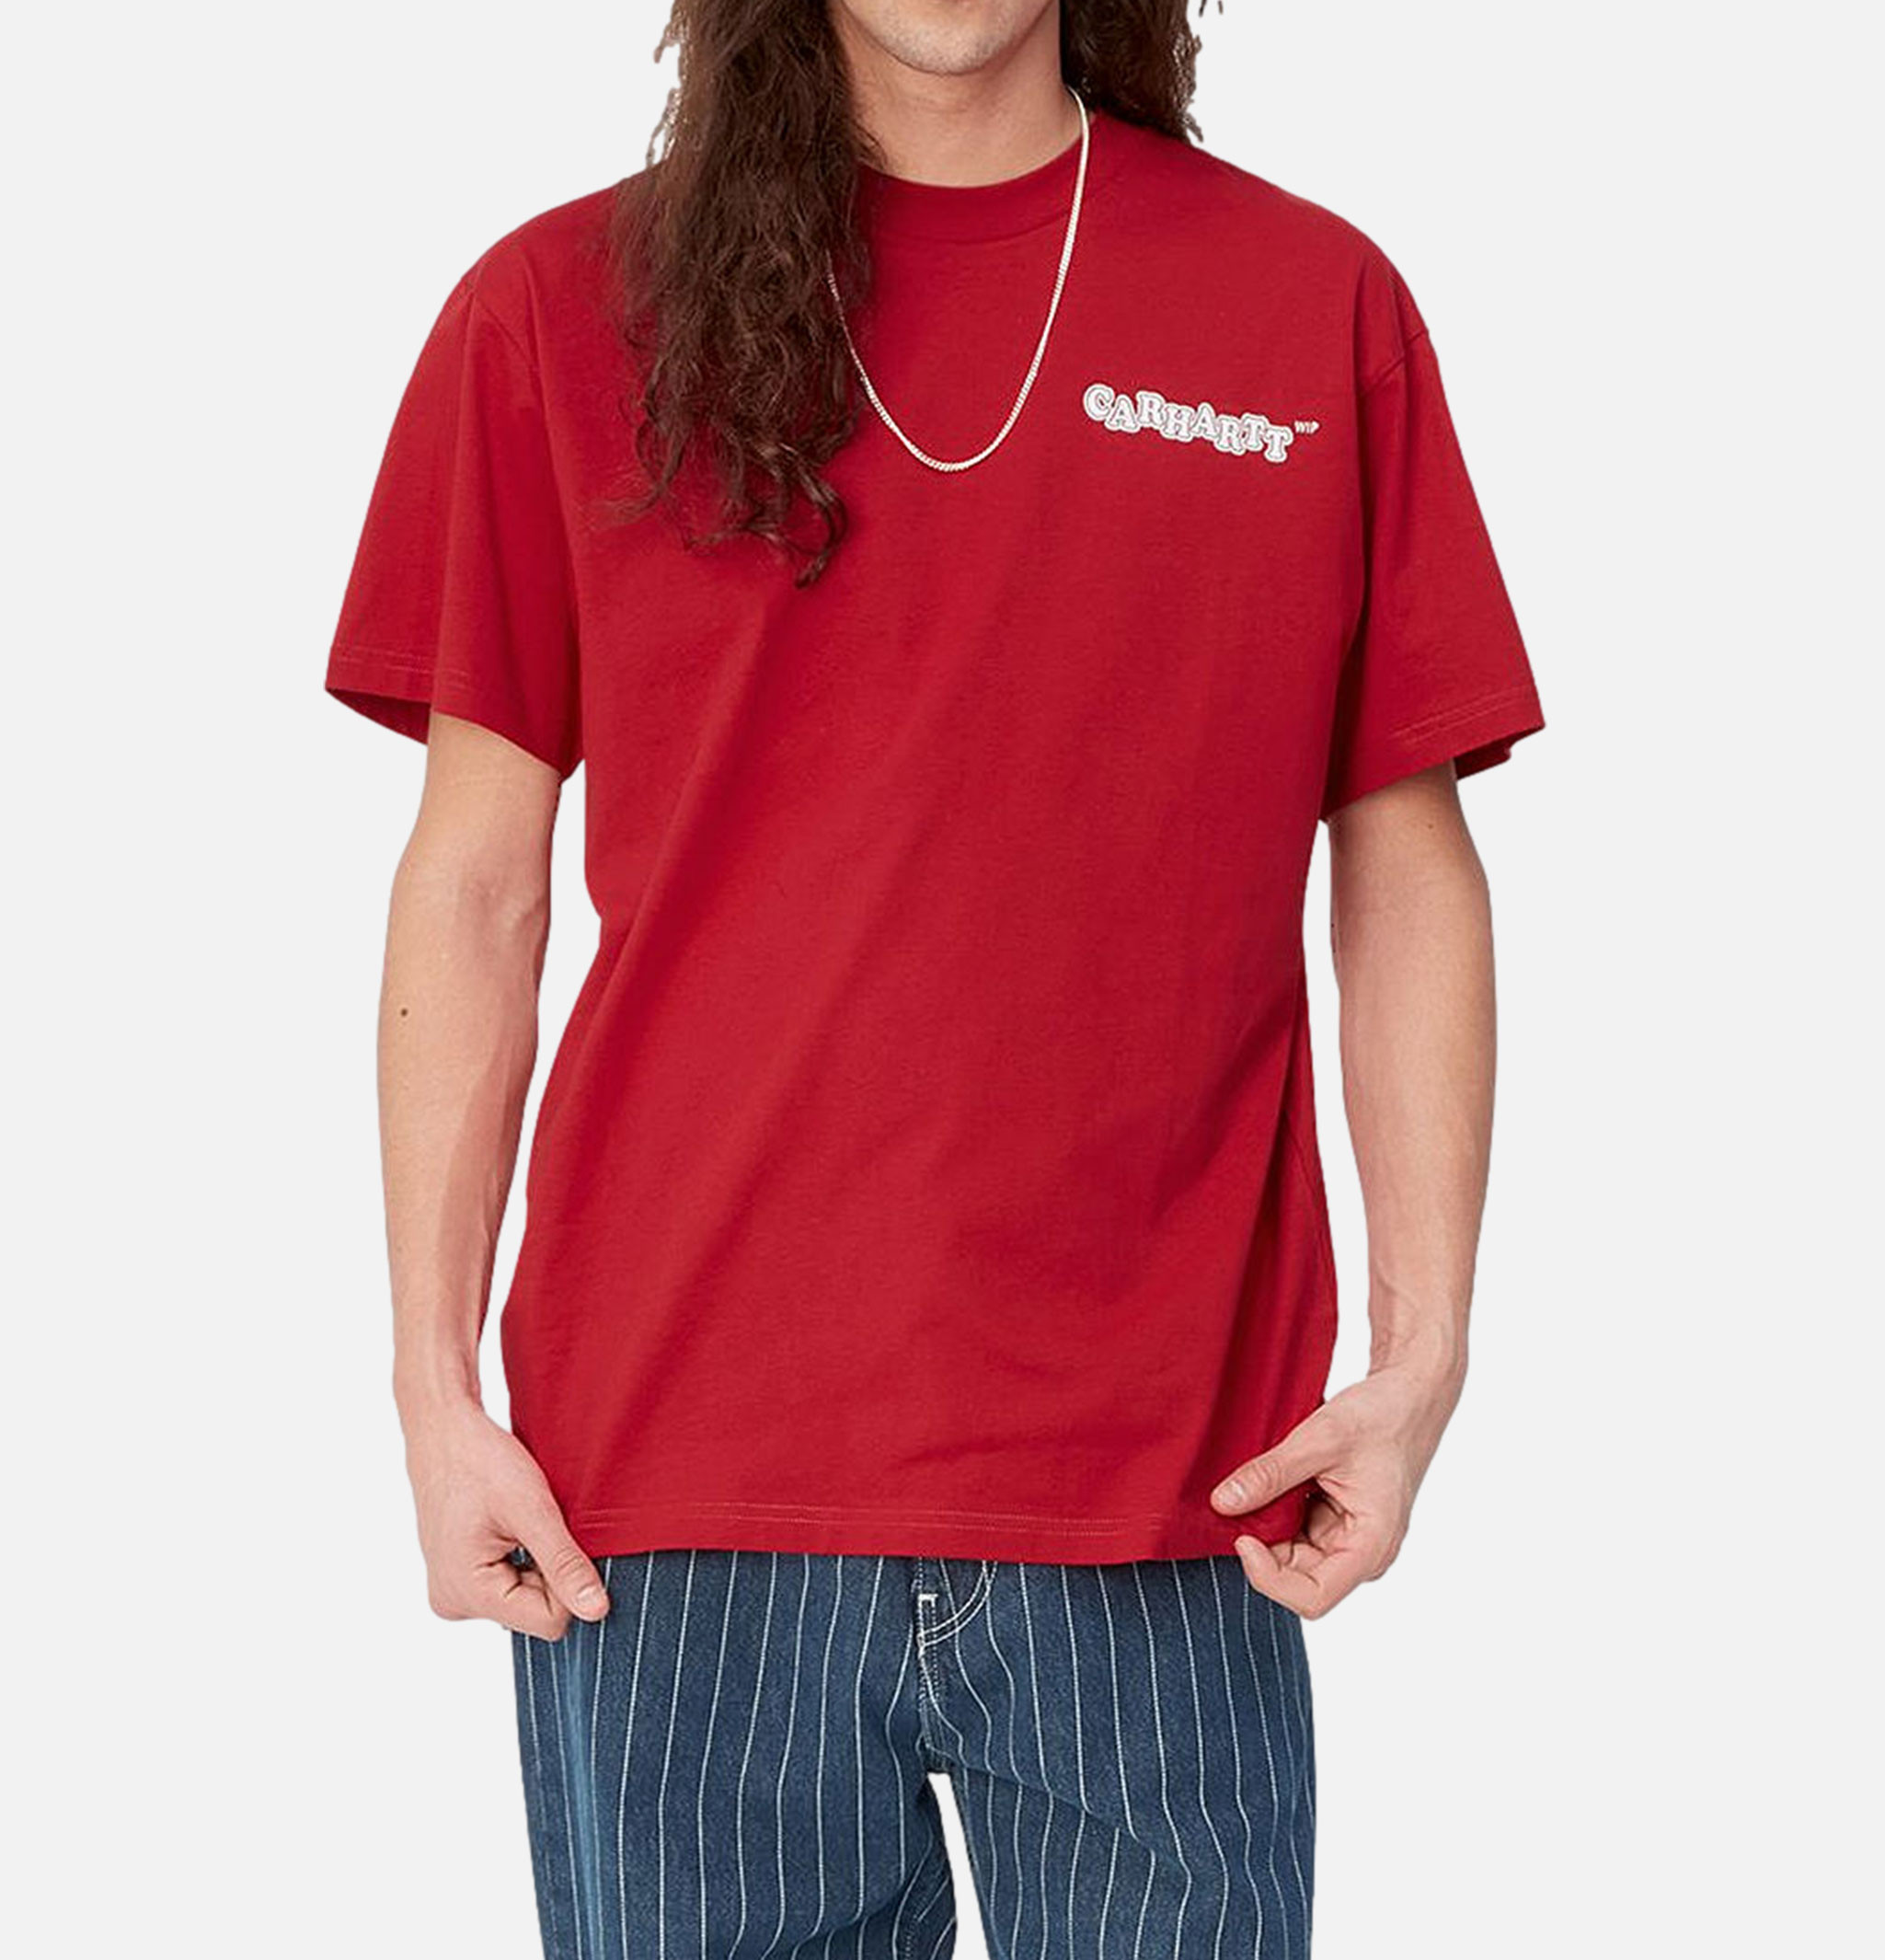 Carhartt WIP T-shirt Fast Food Samba Red